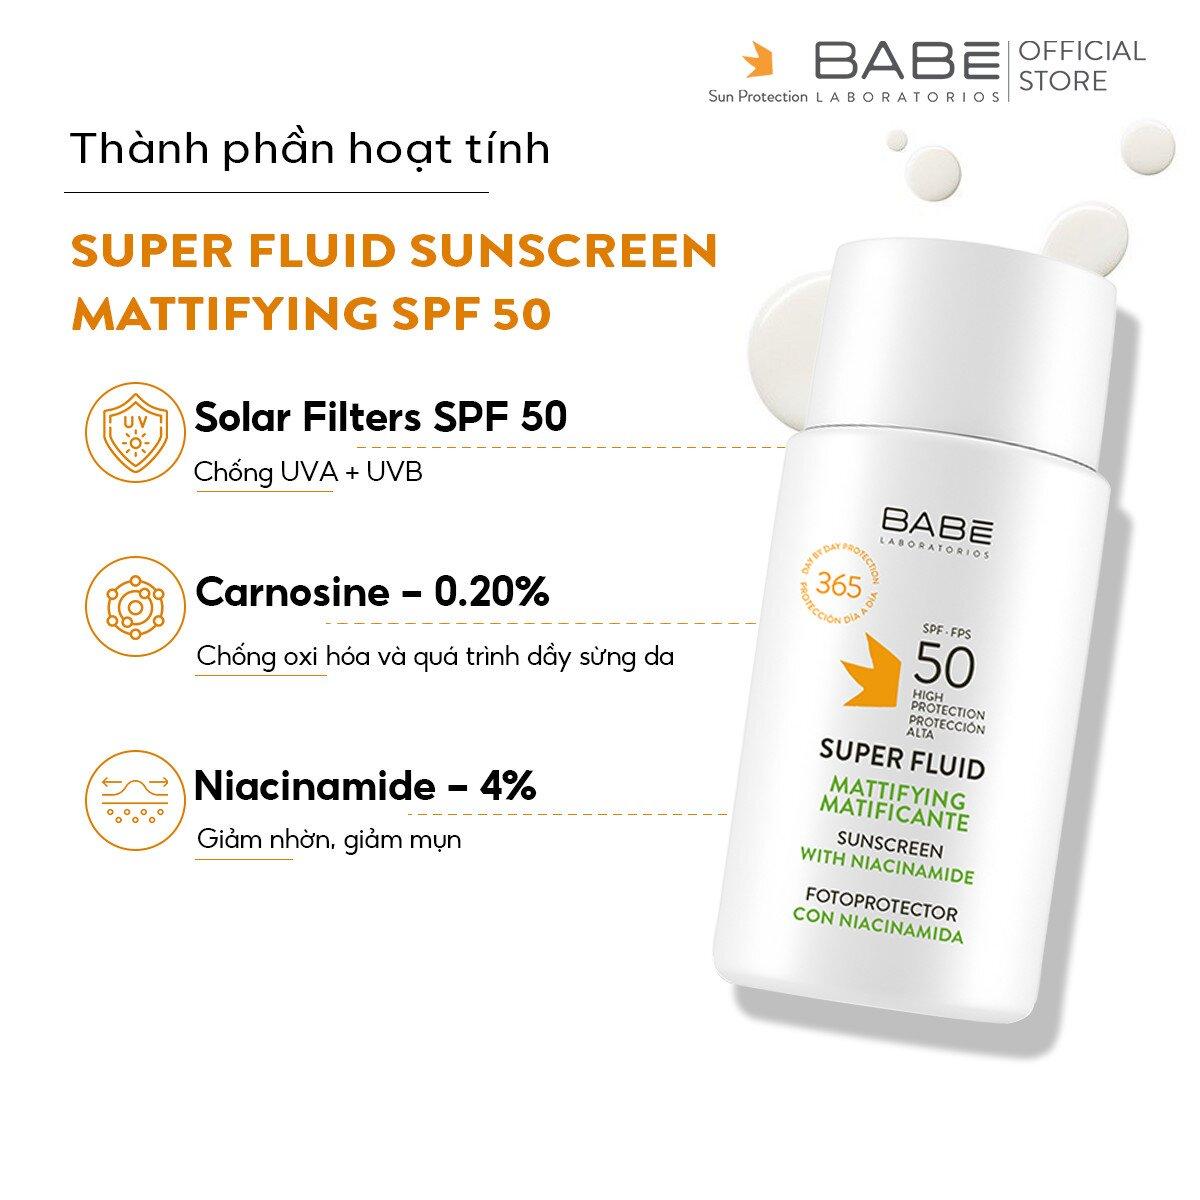 Kem chống nắng BABE Super Fluid Mattifying sunscreen SPF 50 phổ rộng, kiểm soát dầu (Ảnh: internet)